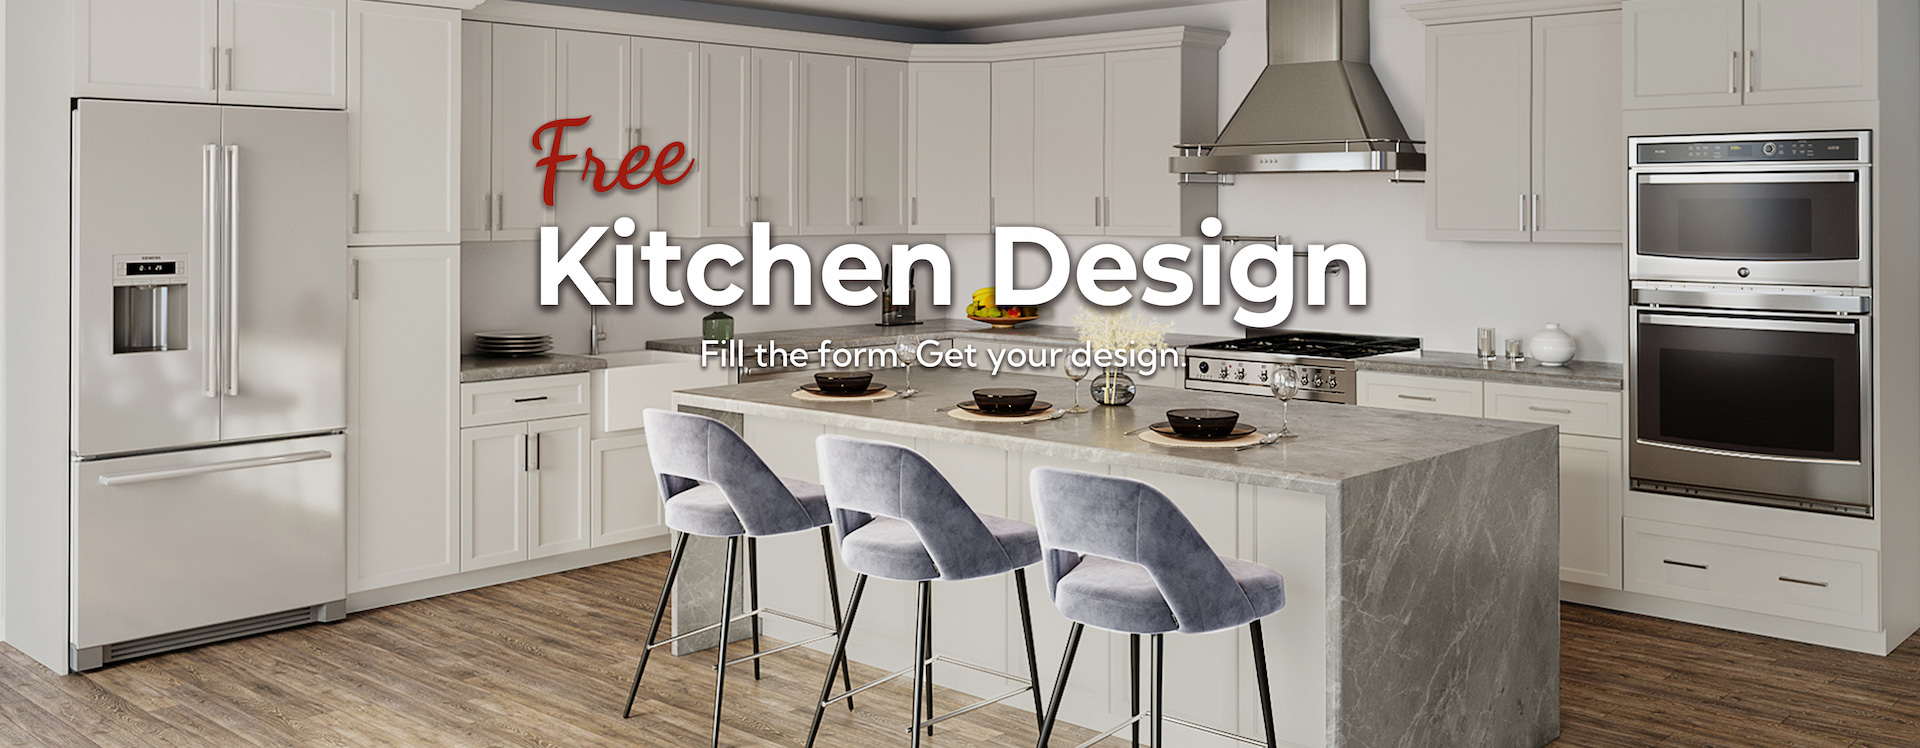 Free Kitchen Design